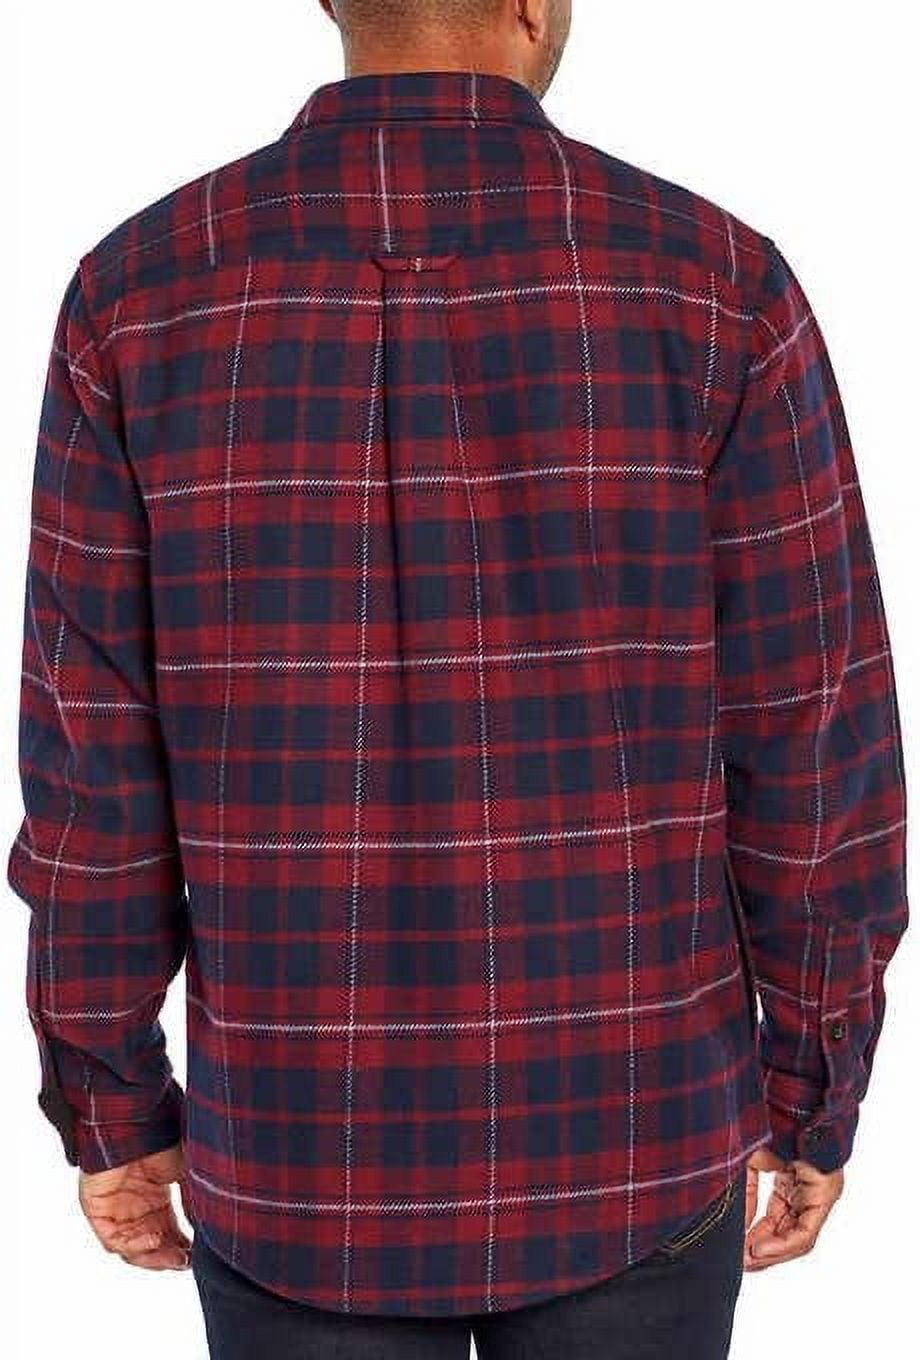 Orvis Men's Pinestreet Heavyweight Flannel Shirt Sz XL Plaid Button long  sleeve 